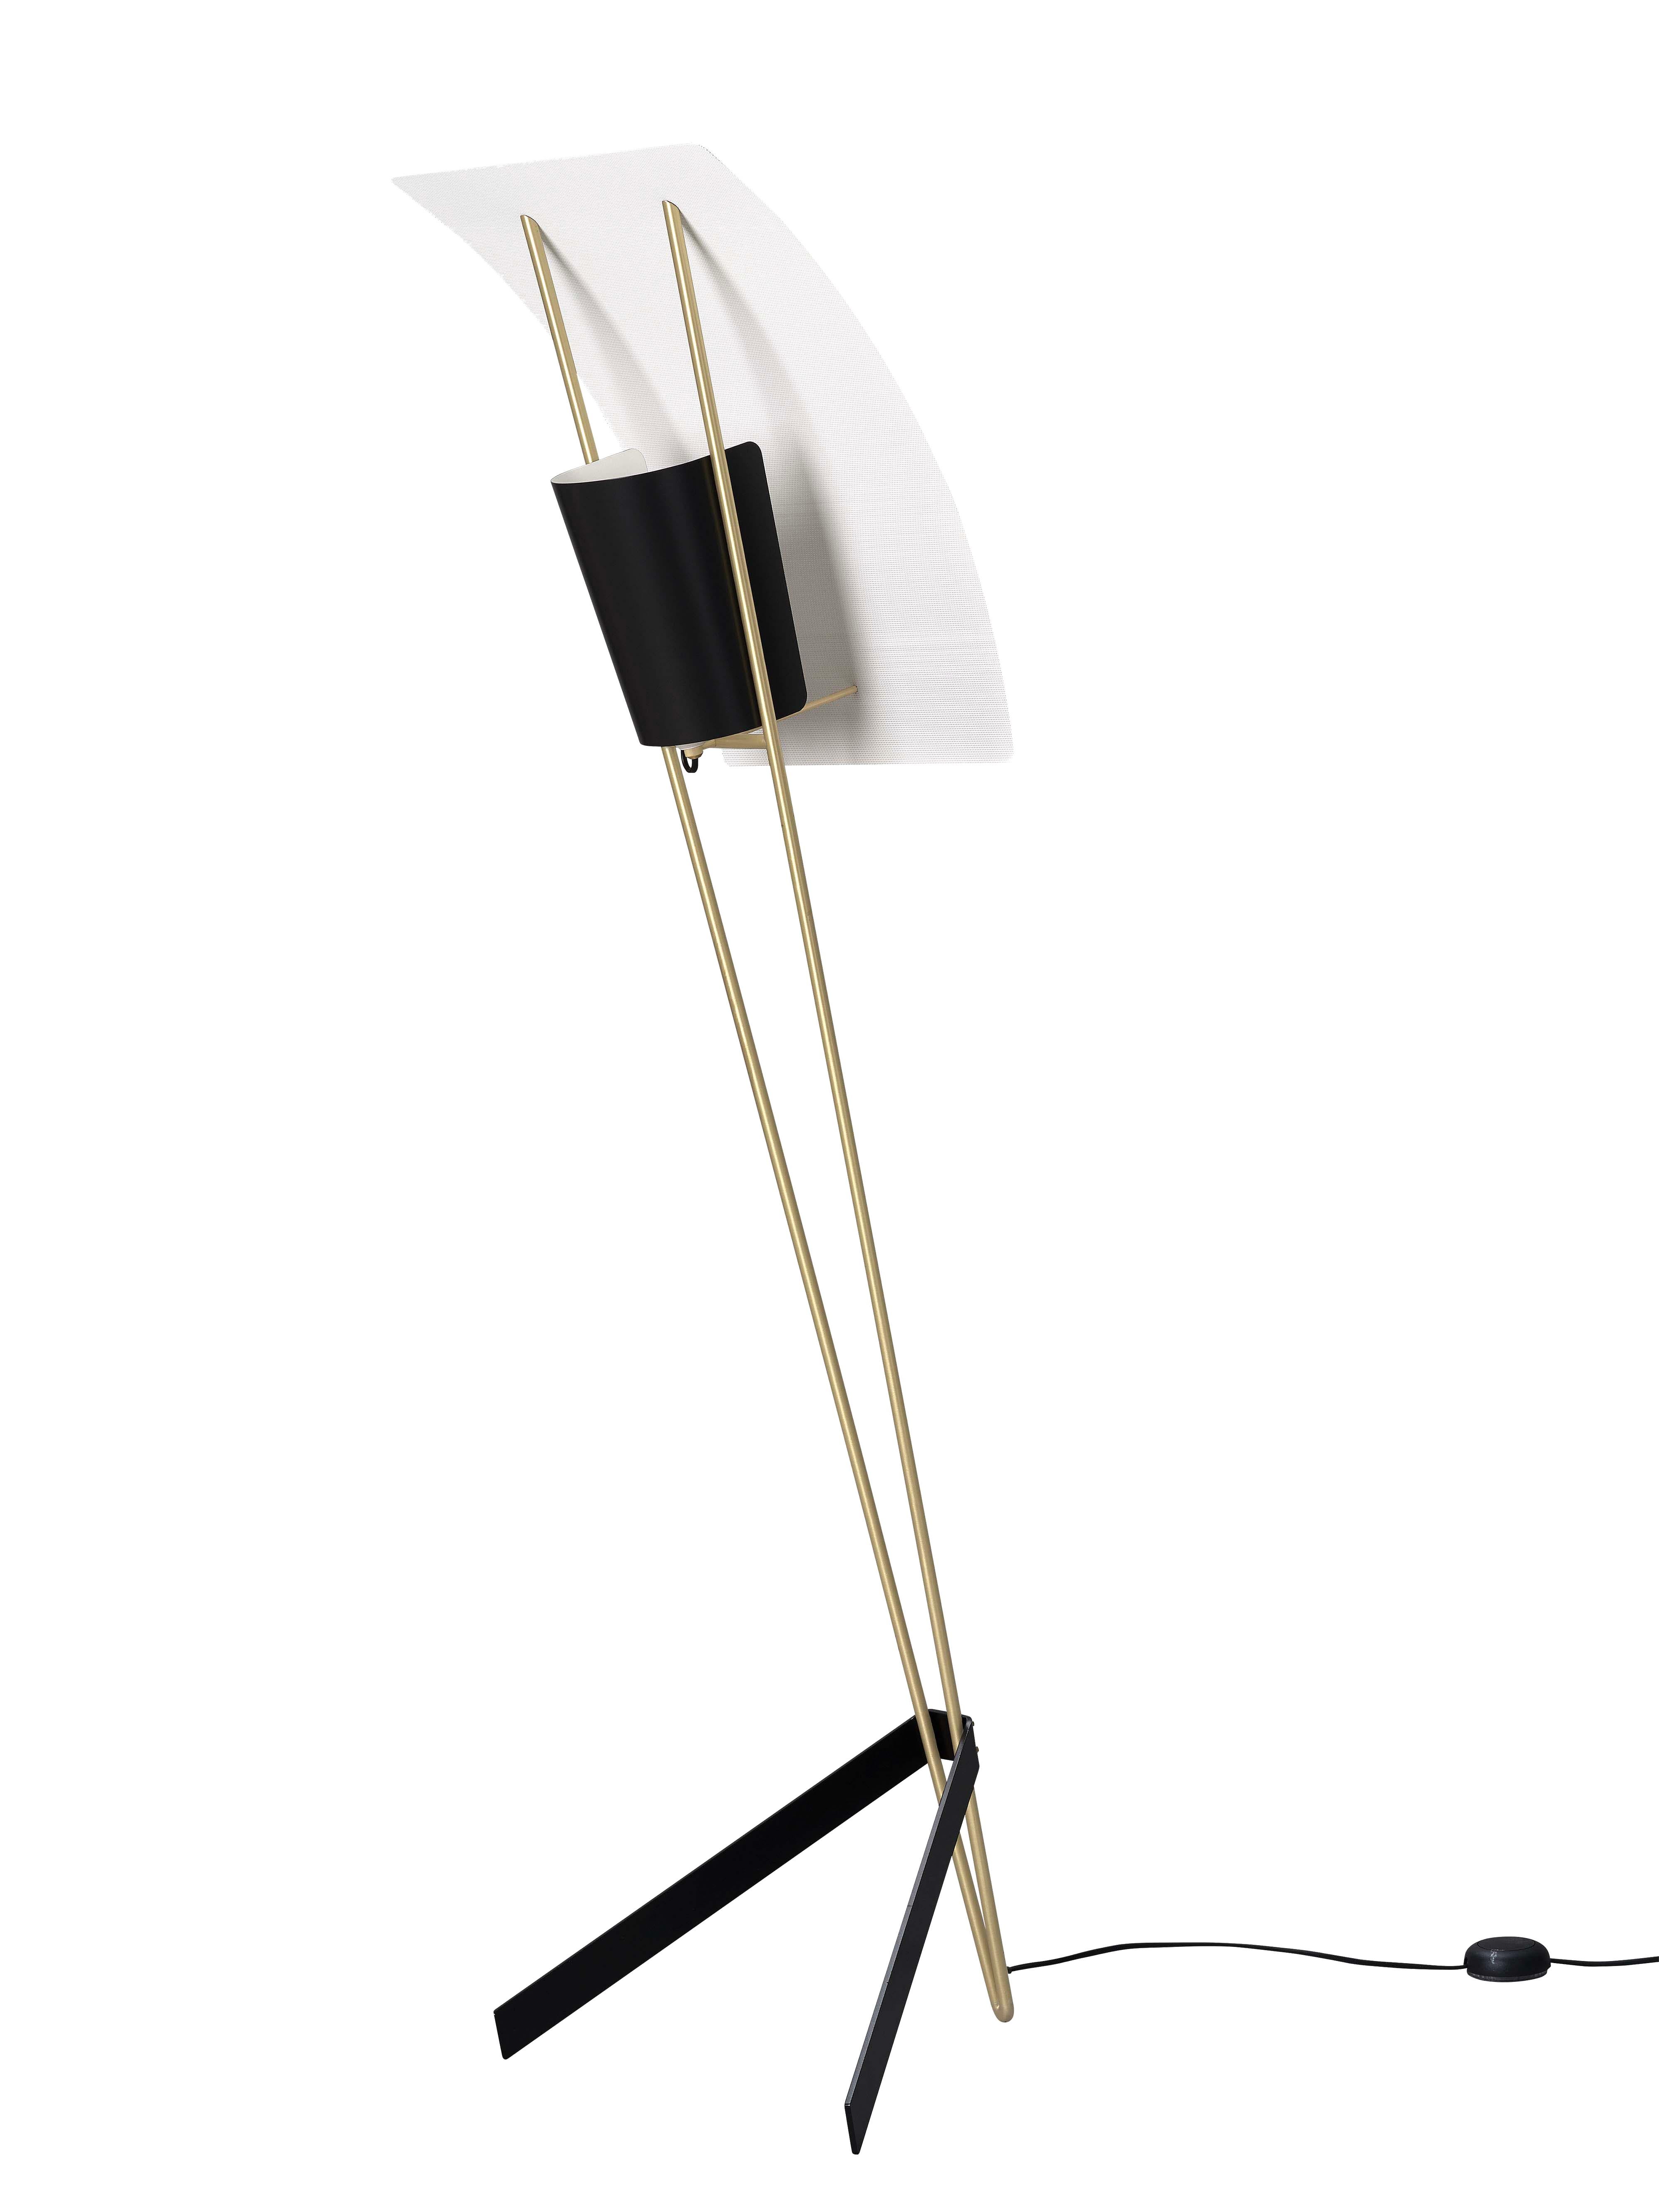 Pierre Guariche Kite Floor Lamp in White for Sammode Studio For Sale 5